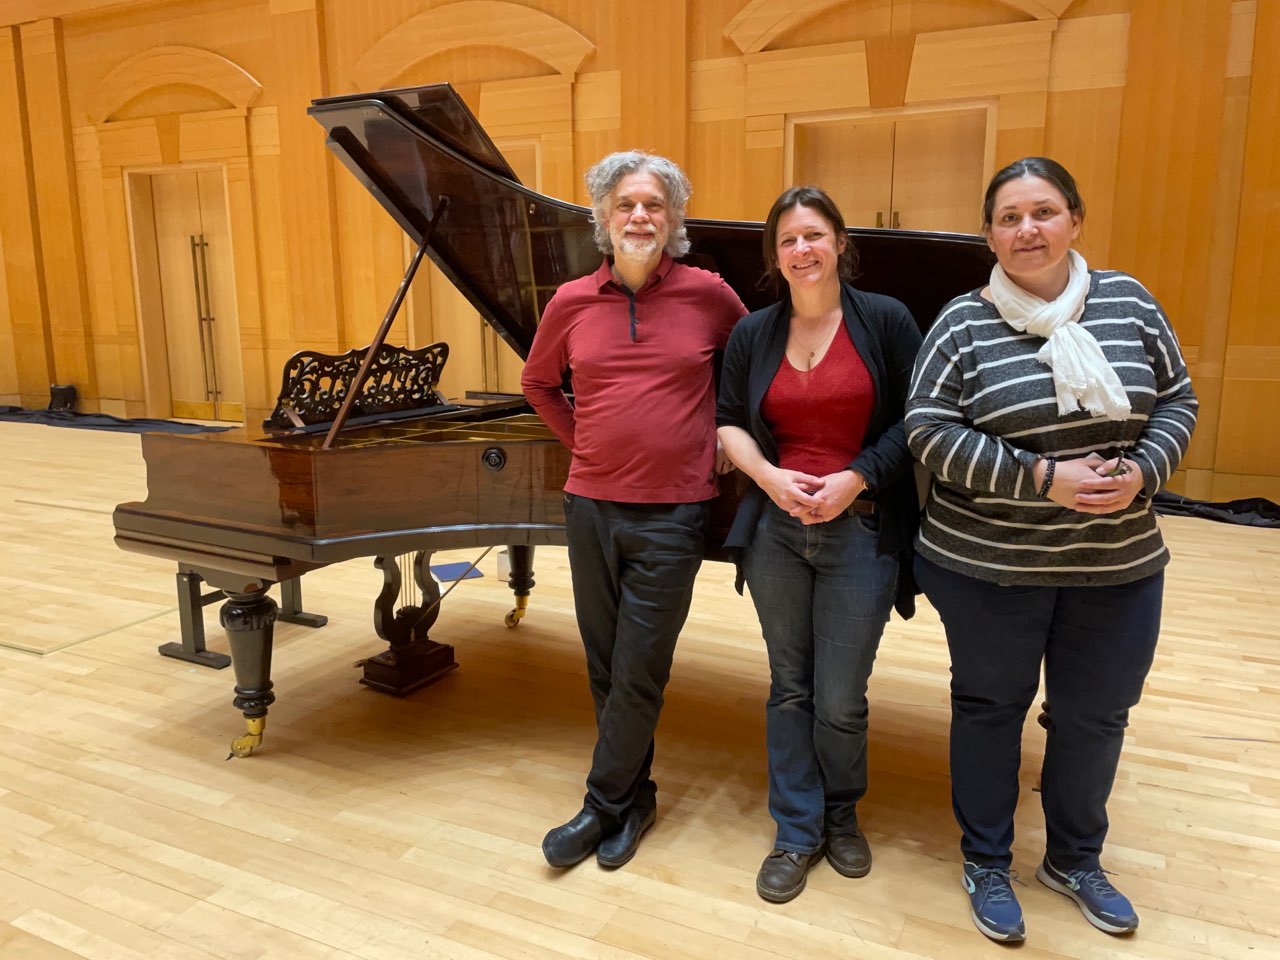 François Frédéric Guy, Marion Lainé, Sylvie Fouanon, enregistrement Pleyel Concert 1905 Chopin Arsenal de Metz